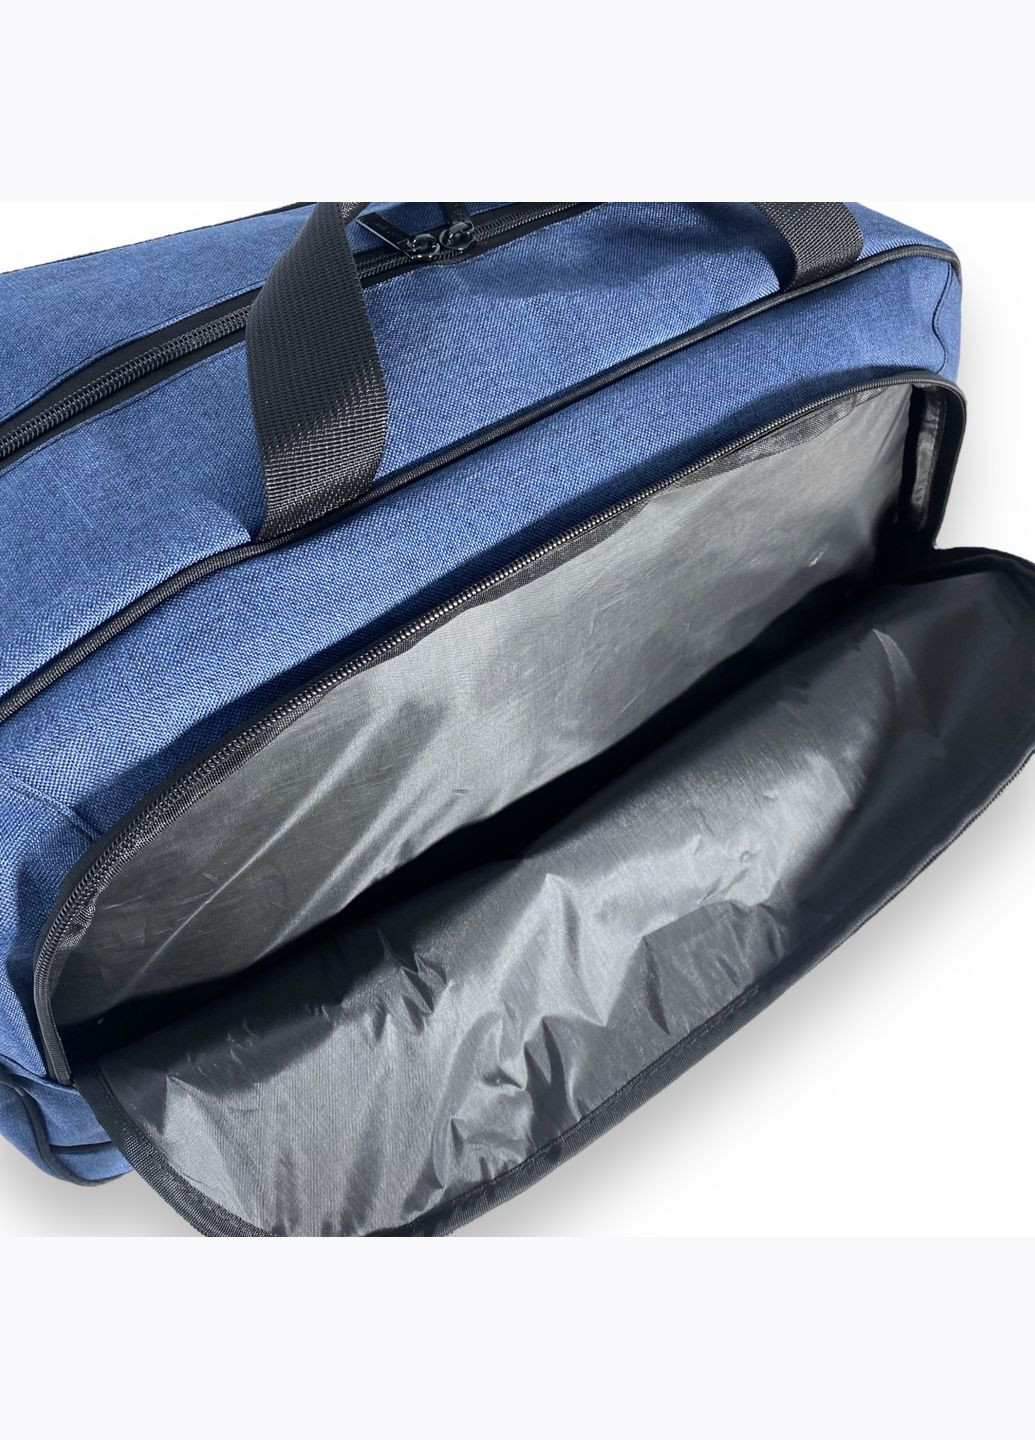 Дорожня сумка, одне відділення, фронтальні кишені, знімний ремінь, ніжки на дні, розмір 56*35*21см синя Favor (284337956)